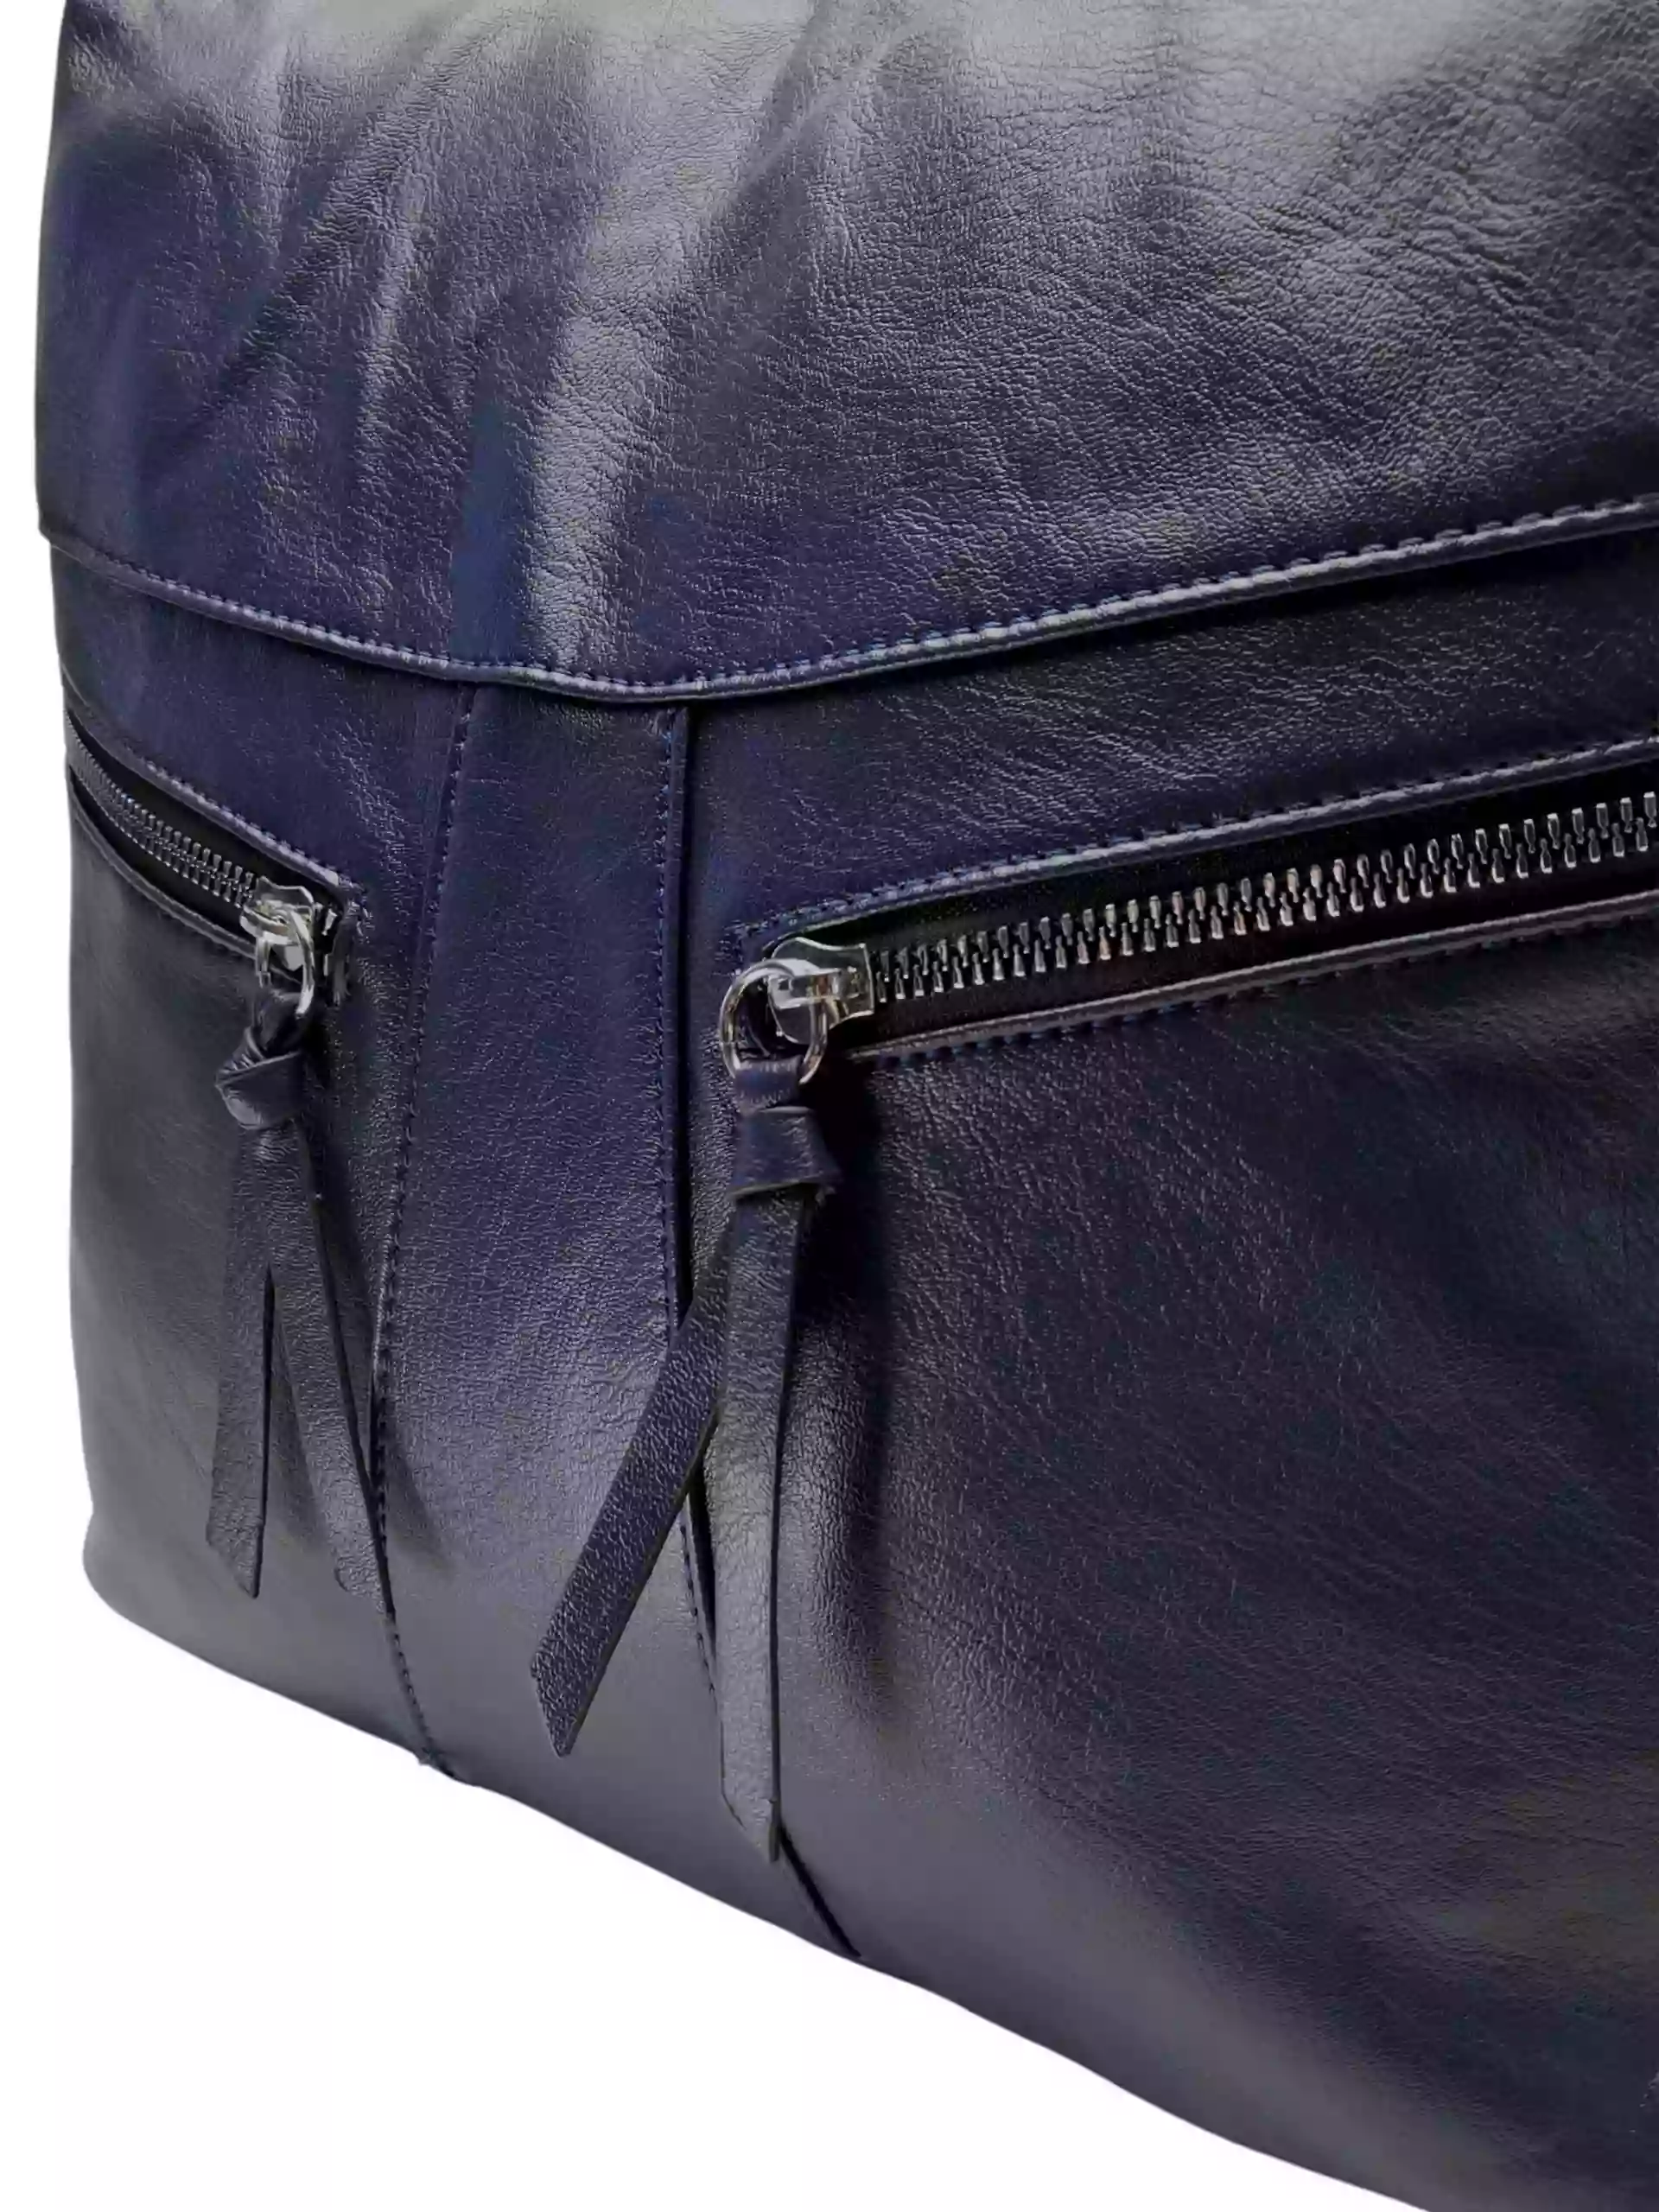 Velký tmavě modrý kabelko-batoh 2v1 s šikmými kapsami, Tapple, H18076O, detail kabelko-batohu